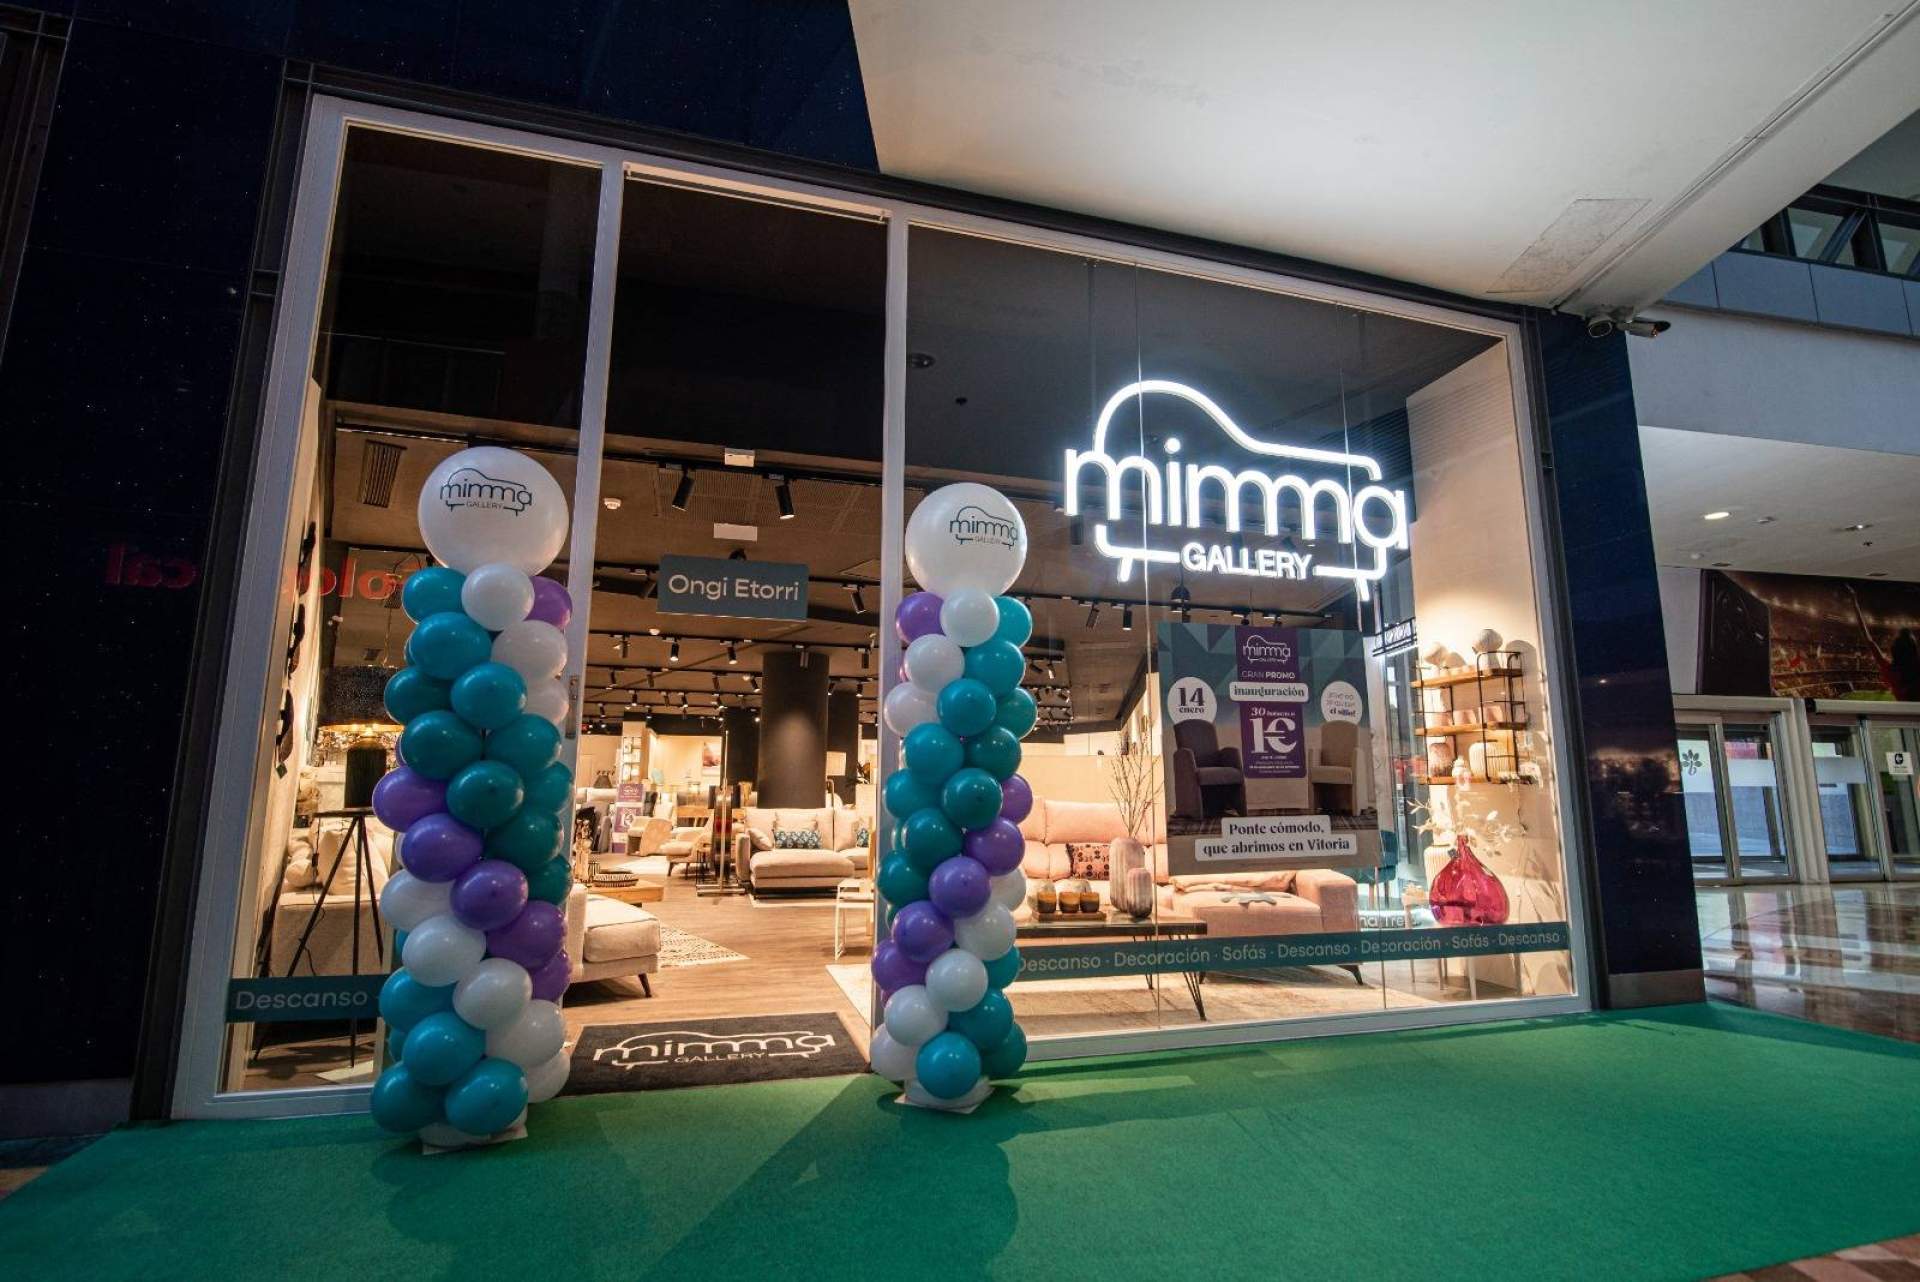 Mimma Gallery aterriza en Vitoria con 60 butacas a 1 €